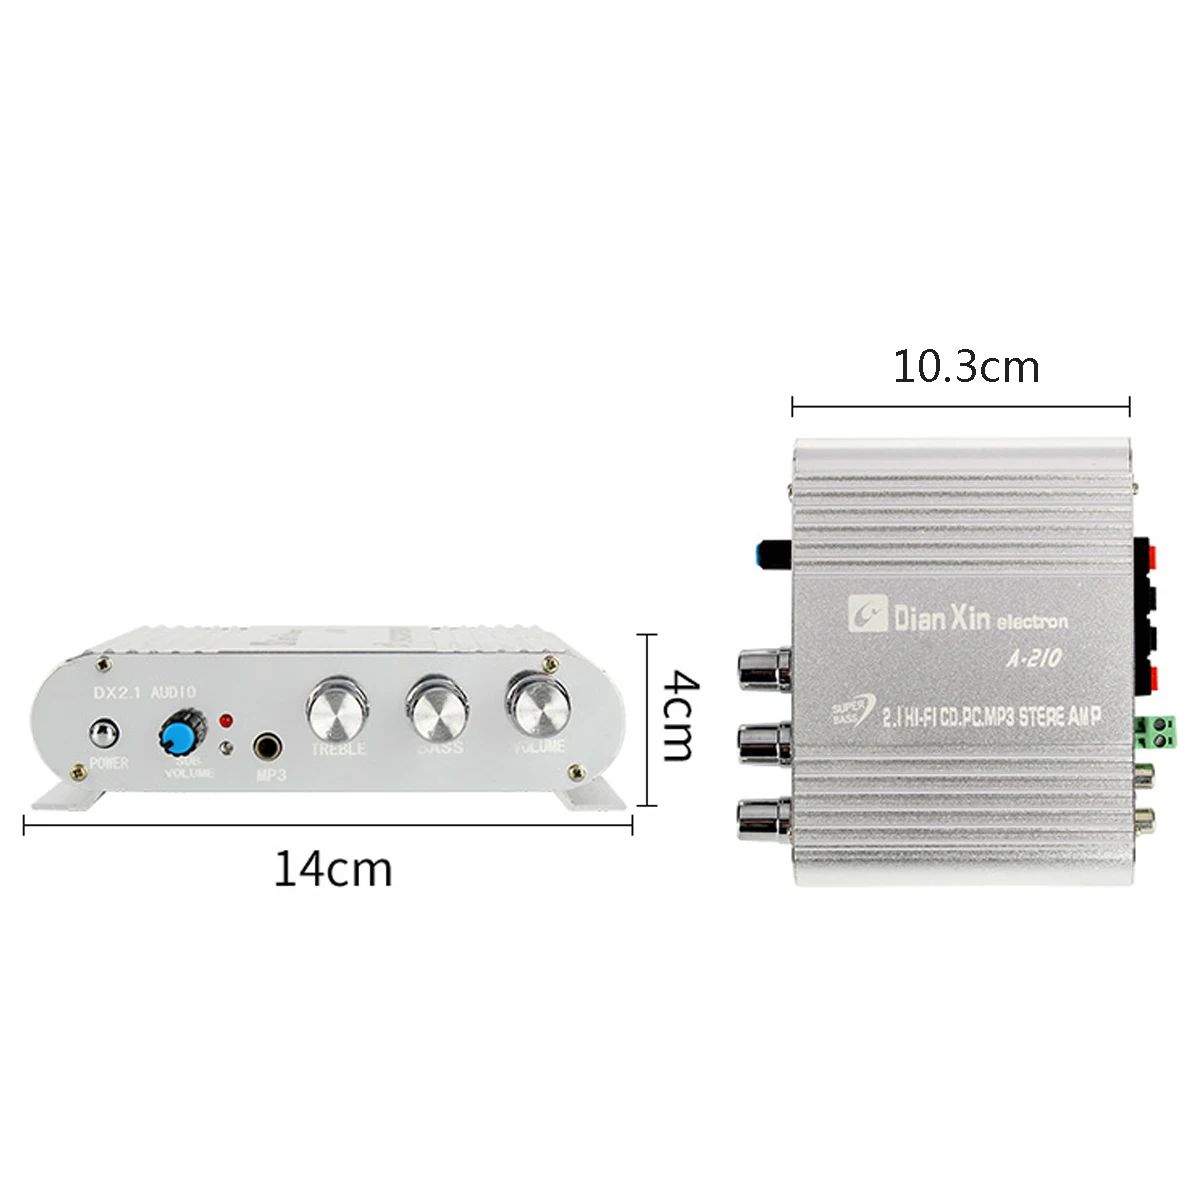 DX-210 Hi-Fi автомобиль 3-канальный Усилитель Стерео Mega Bass 12 V-15 V Усилители для подключения ПК DVD плеер MP3 MP4 игроков сабвуфер